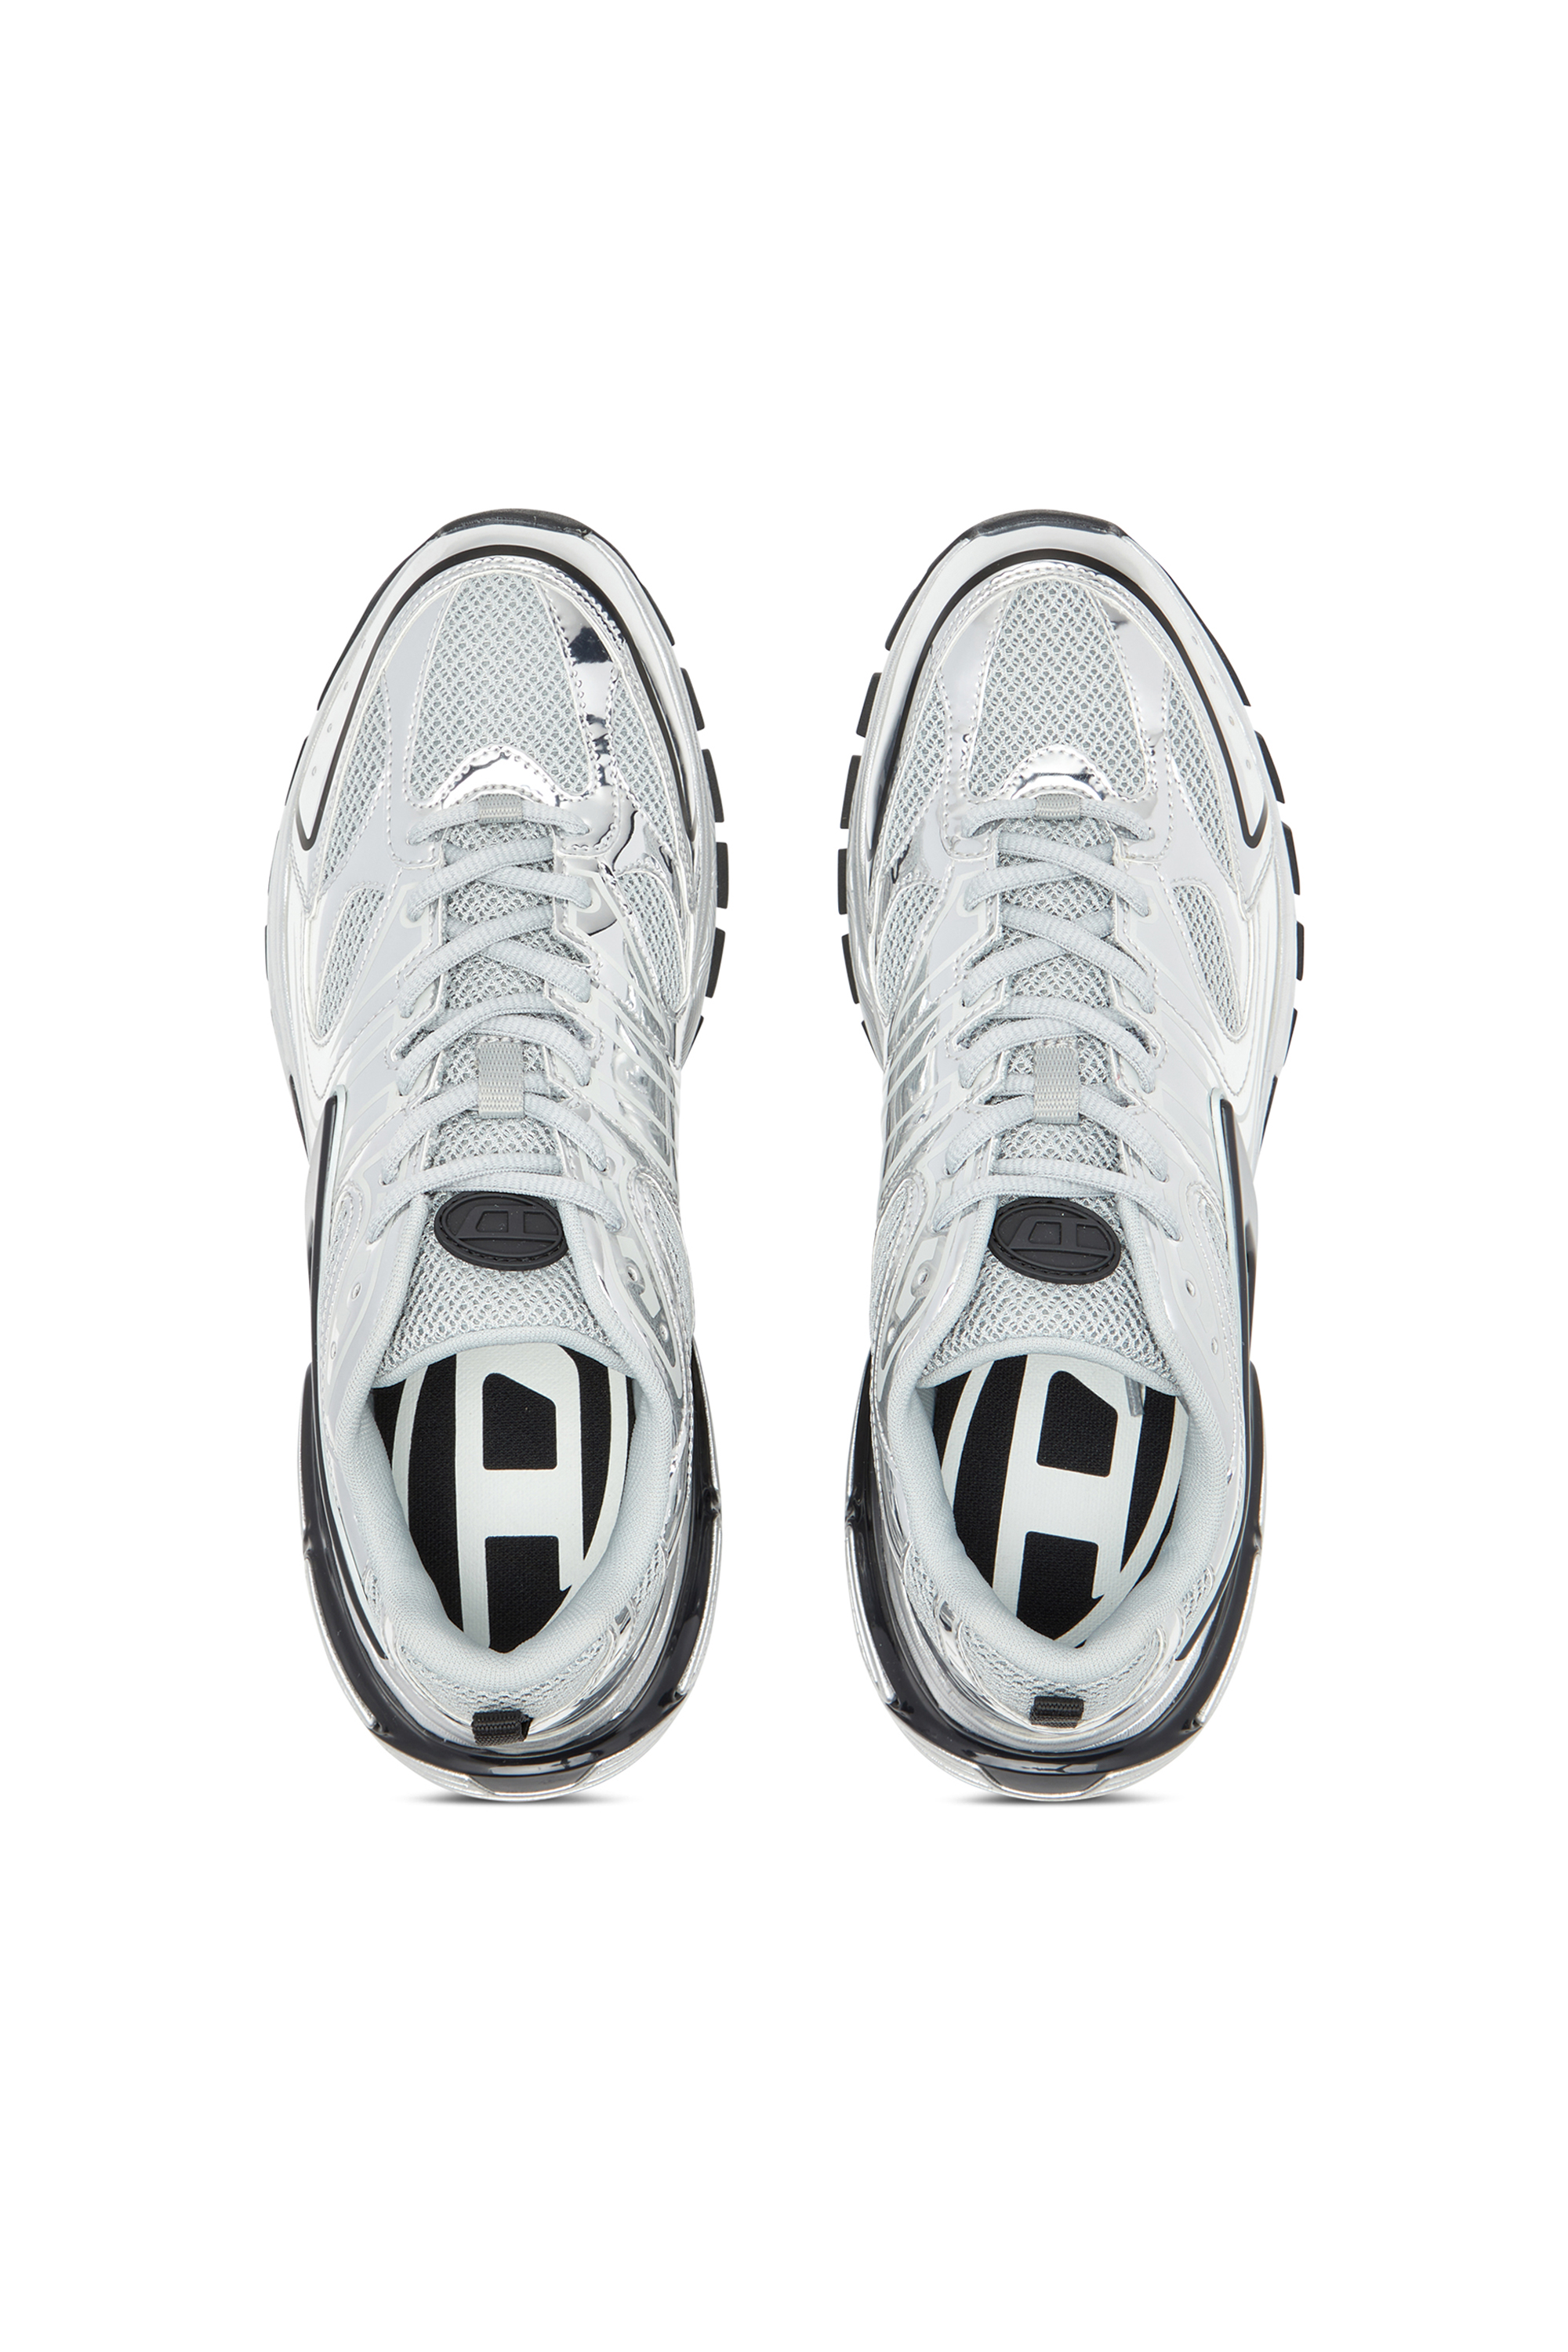 Diesel - S-SERENDIPITY PRO-X1, Herren S-Serendipity-Sneakers aus Mesh mit Metallic-Overlays in Bunt - Image 5